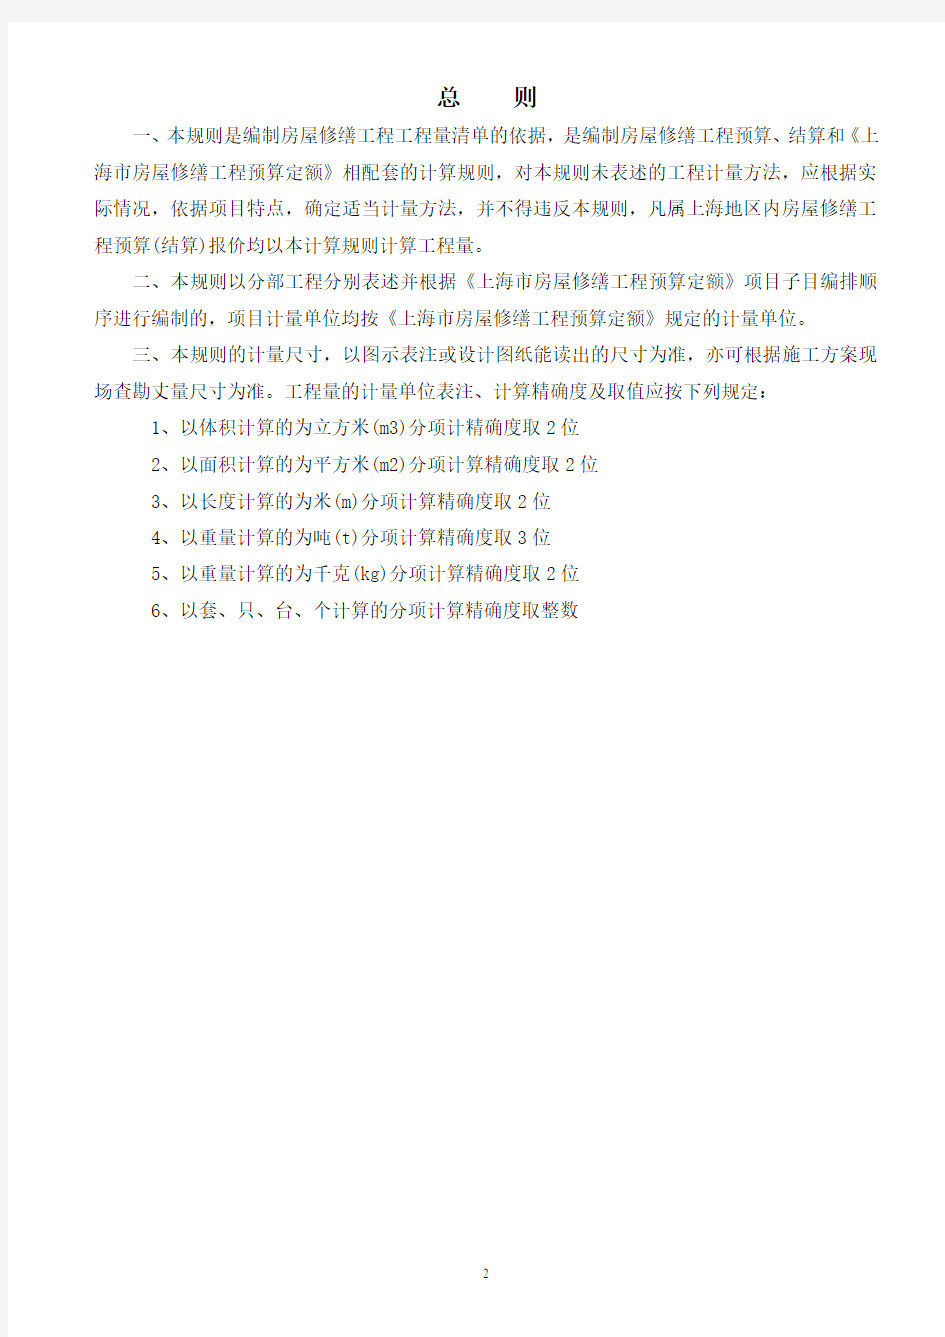 上海市房屋修缮工程预算定额(2000)工程量计算规则